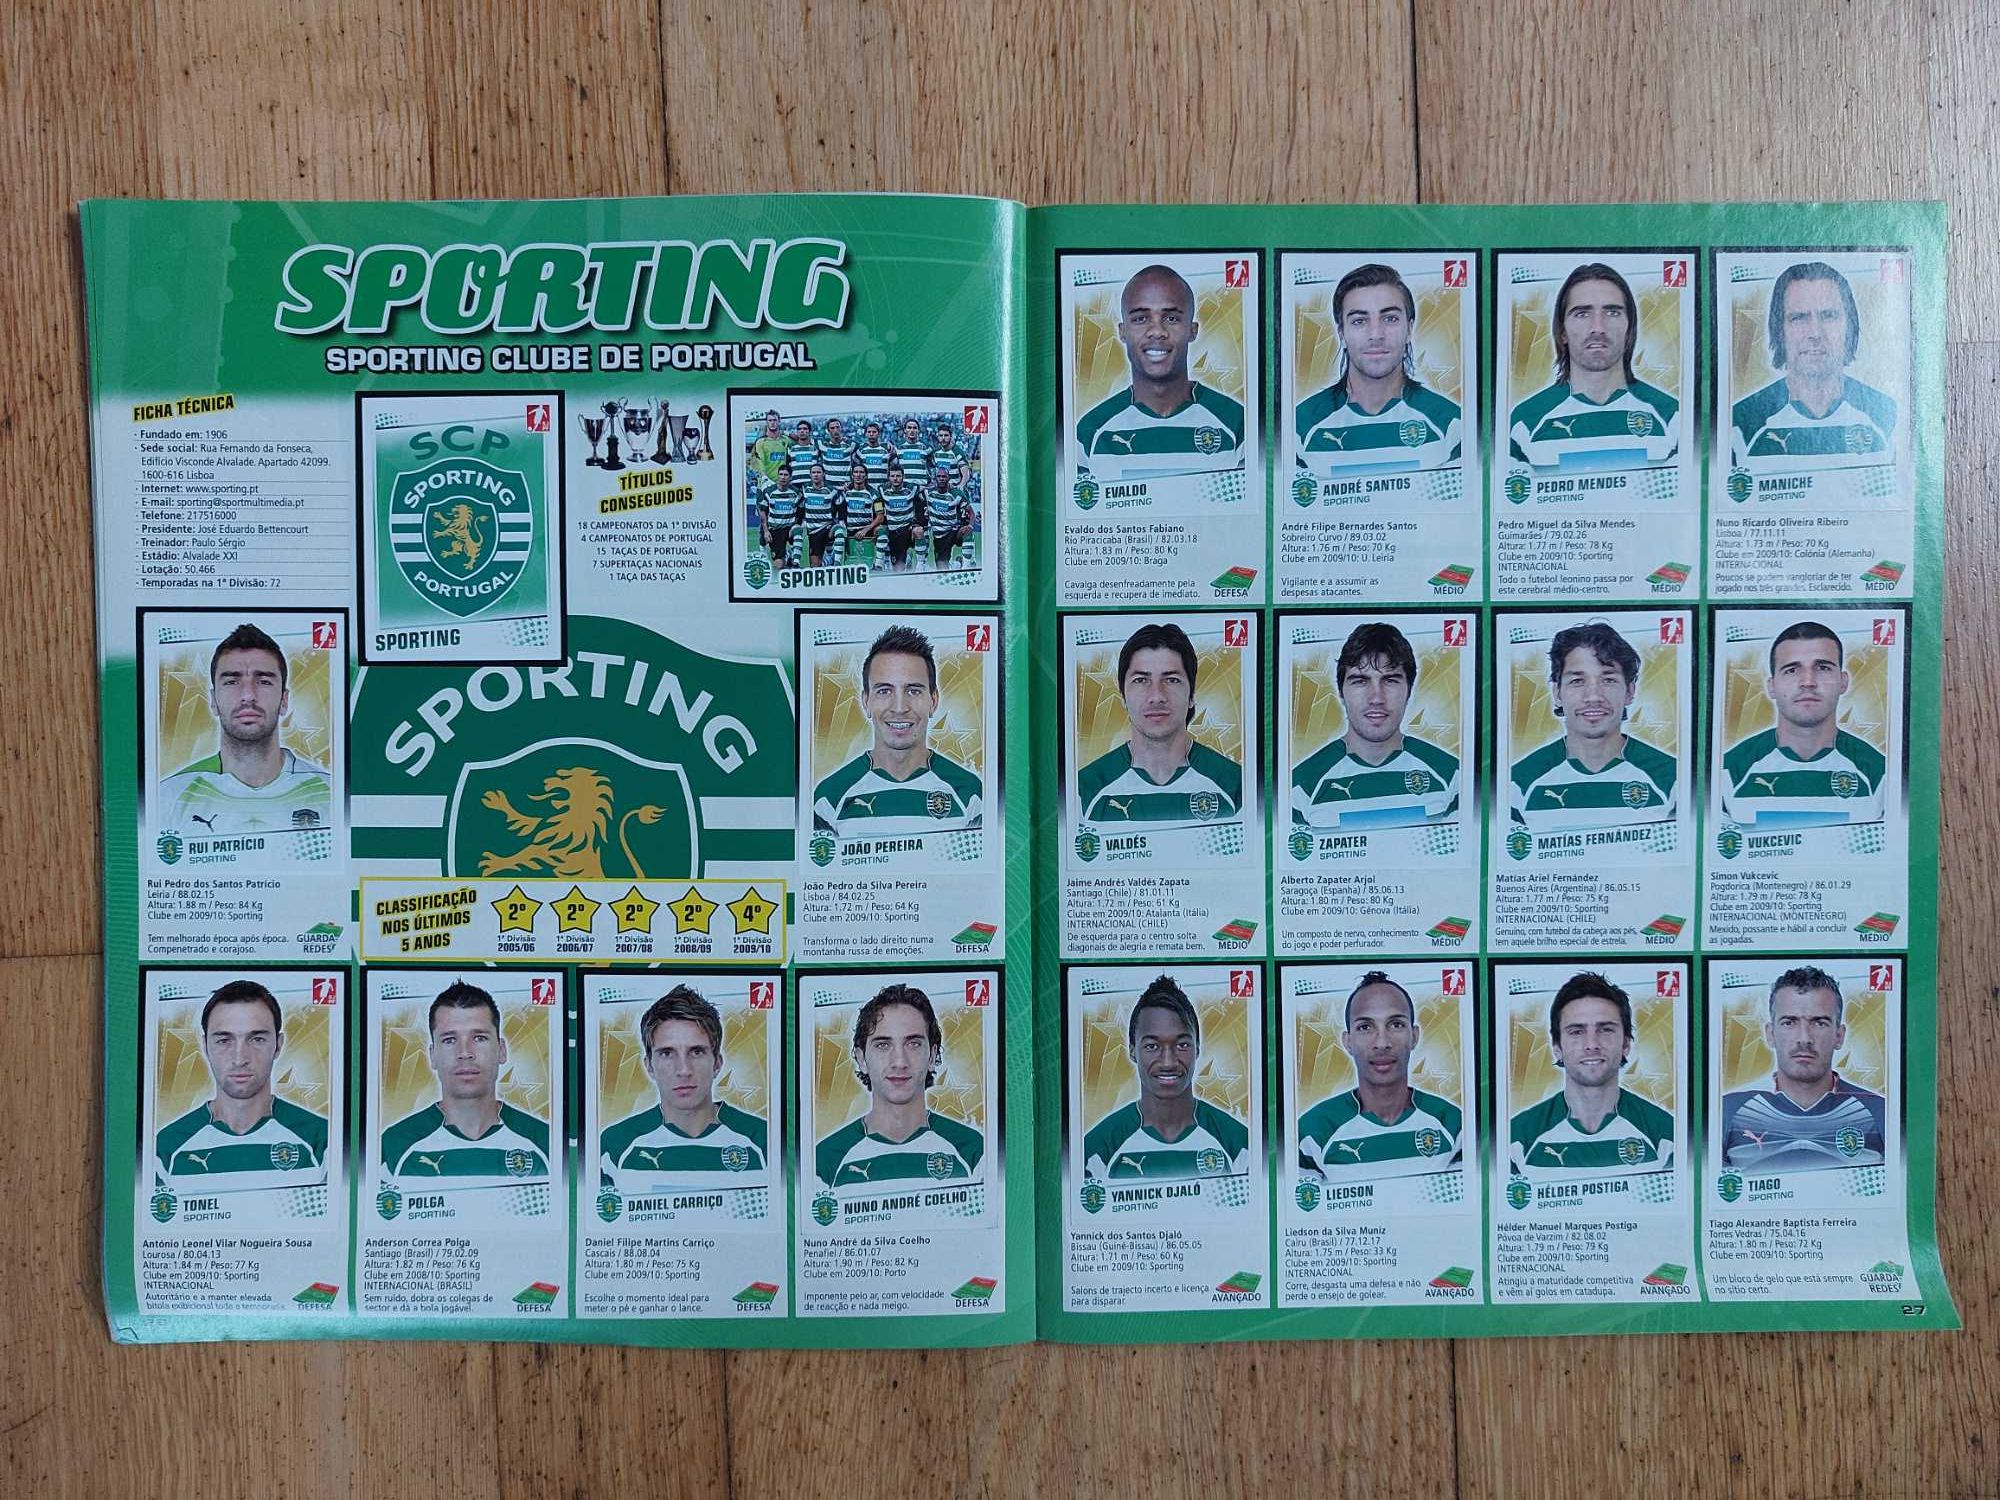 Caderneta de cromos "Futebol 2010-11" - Completa